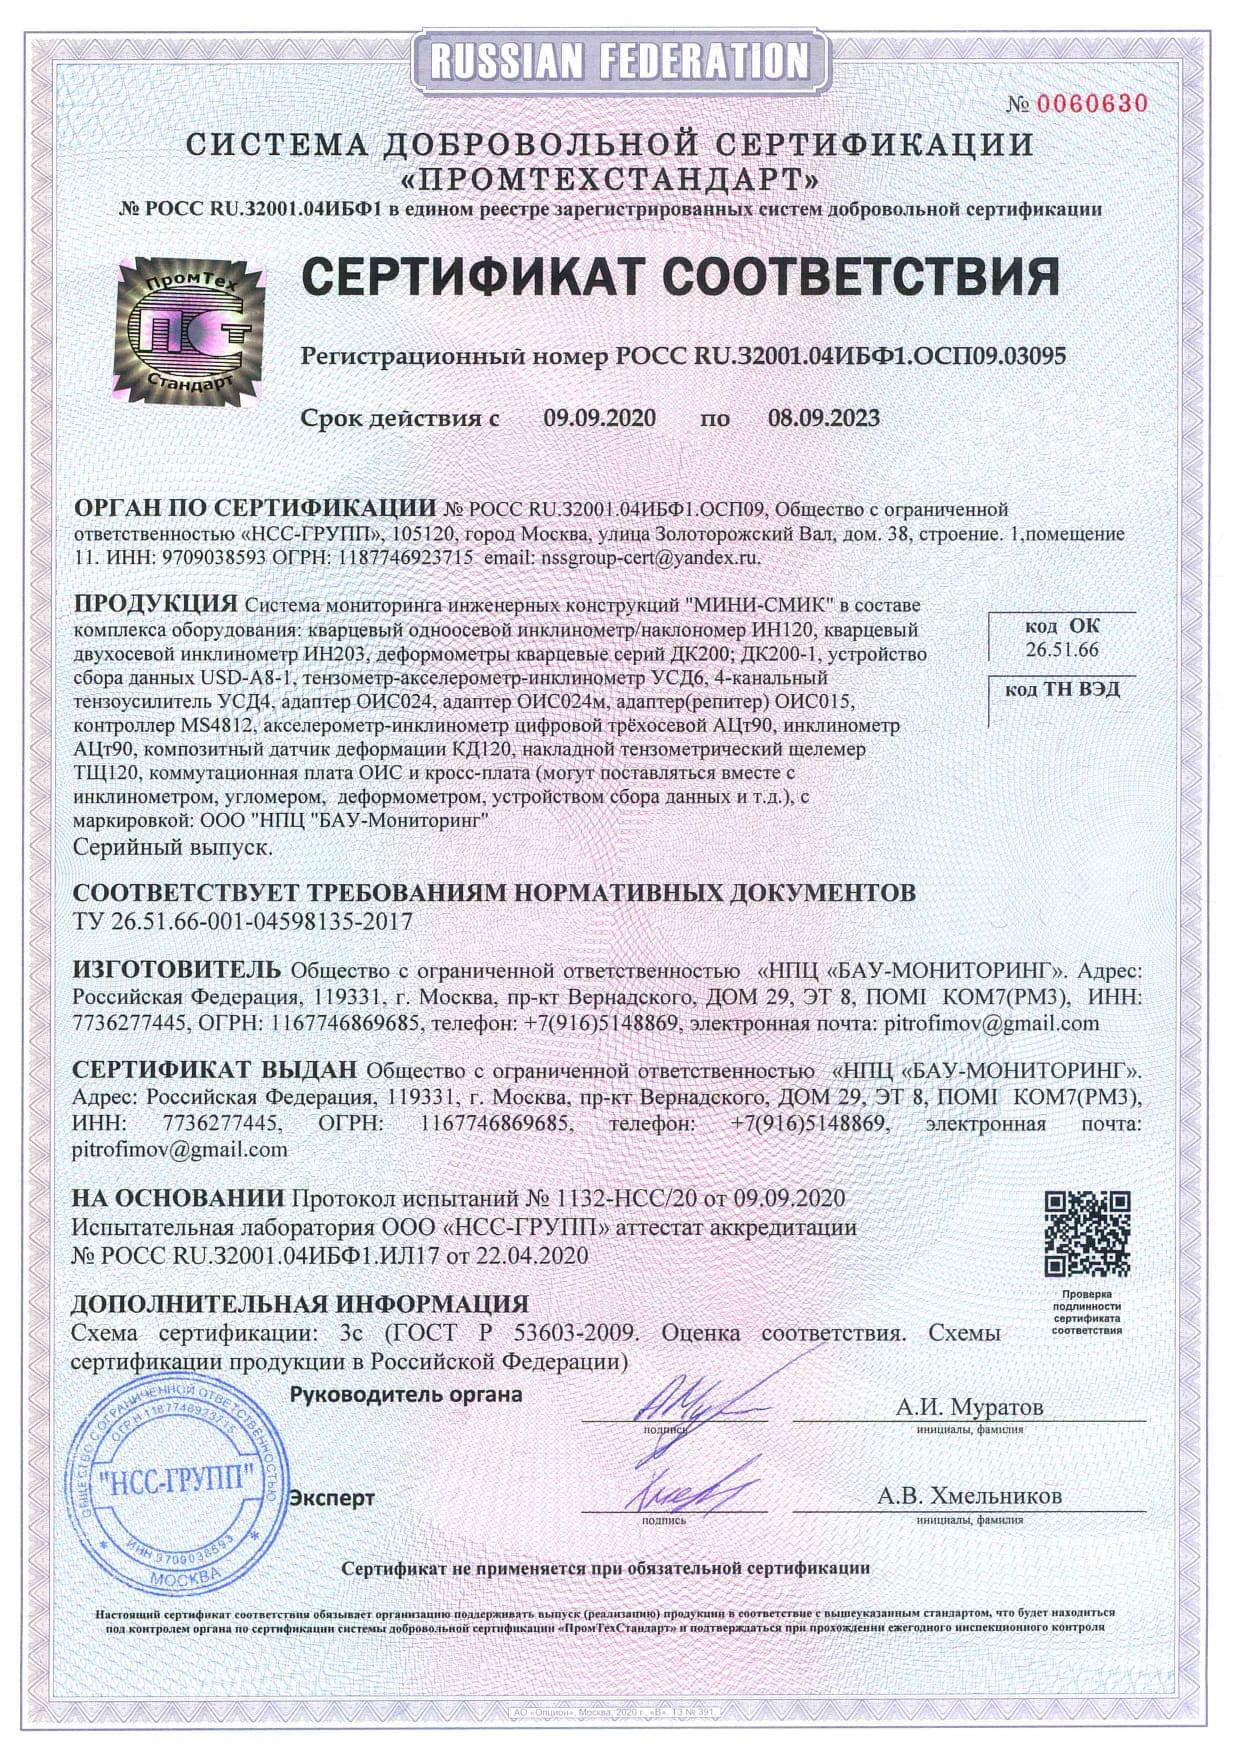 Сертификат соответствия на систему СМИК